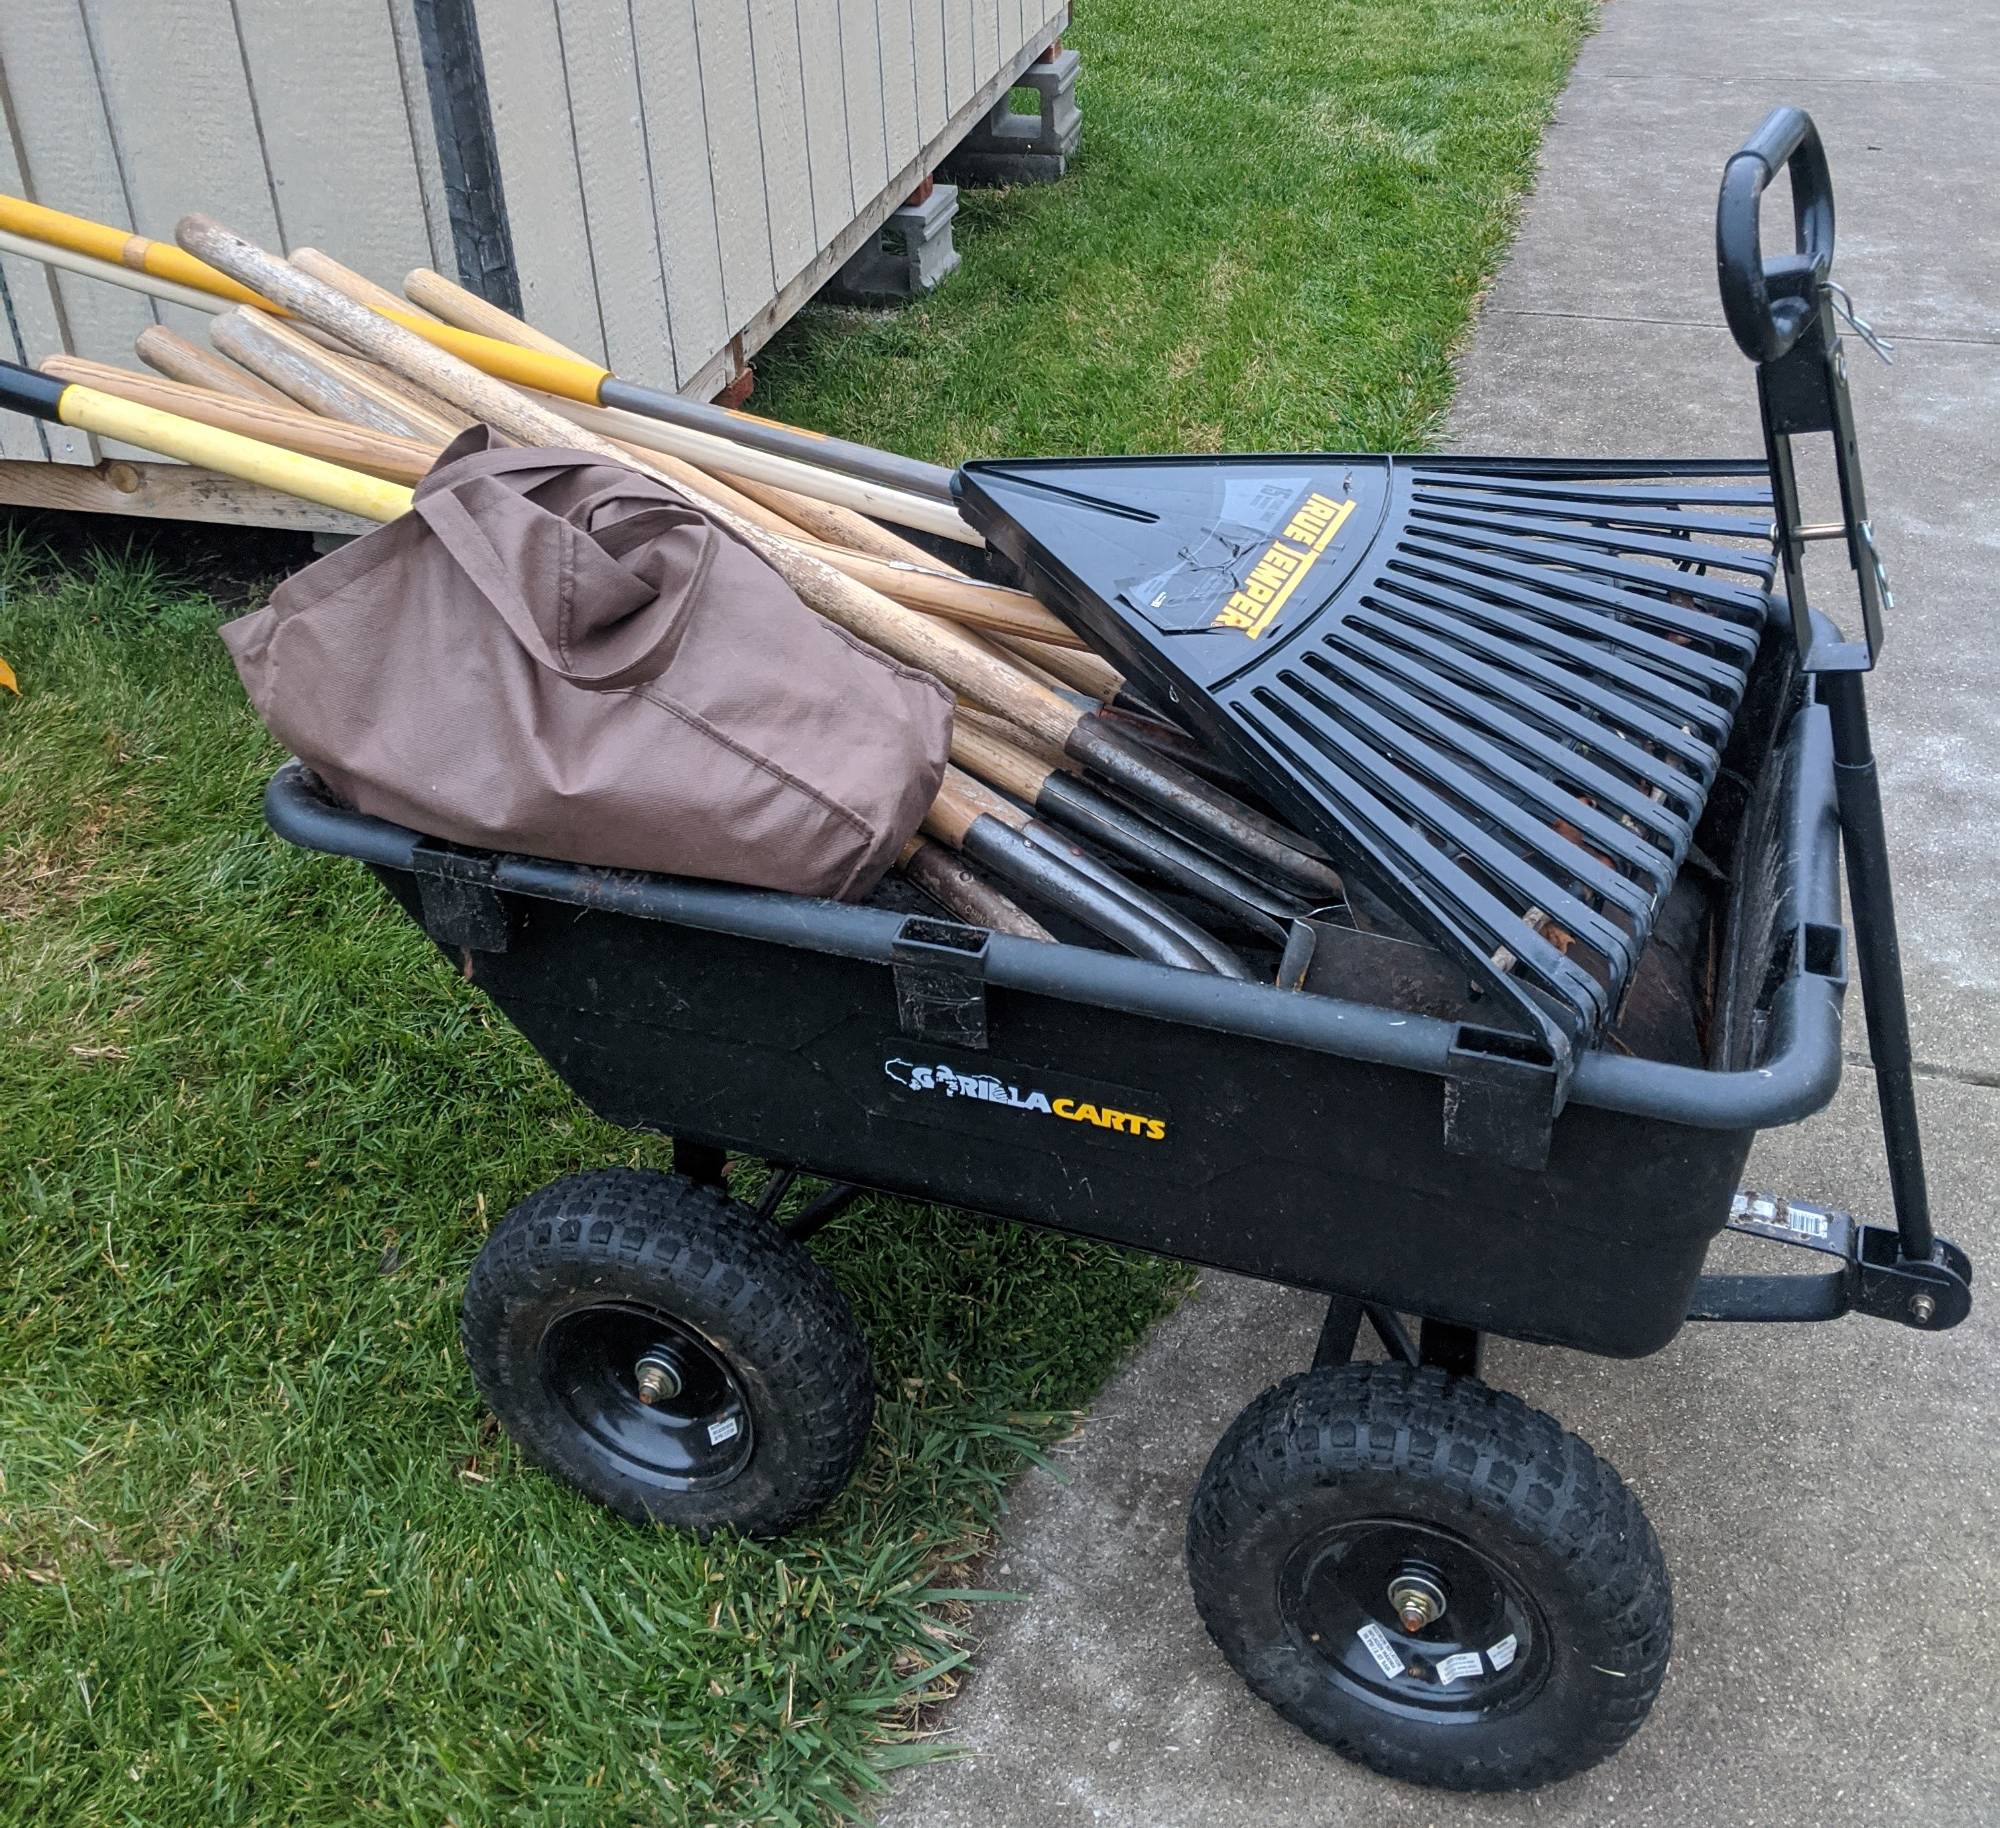 Wagon with rakes